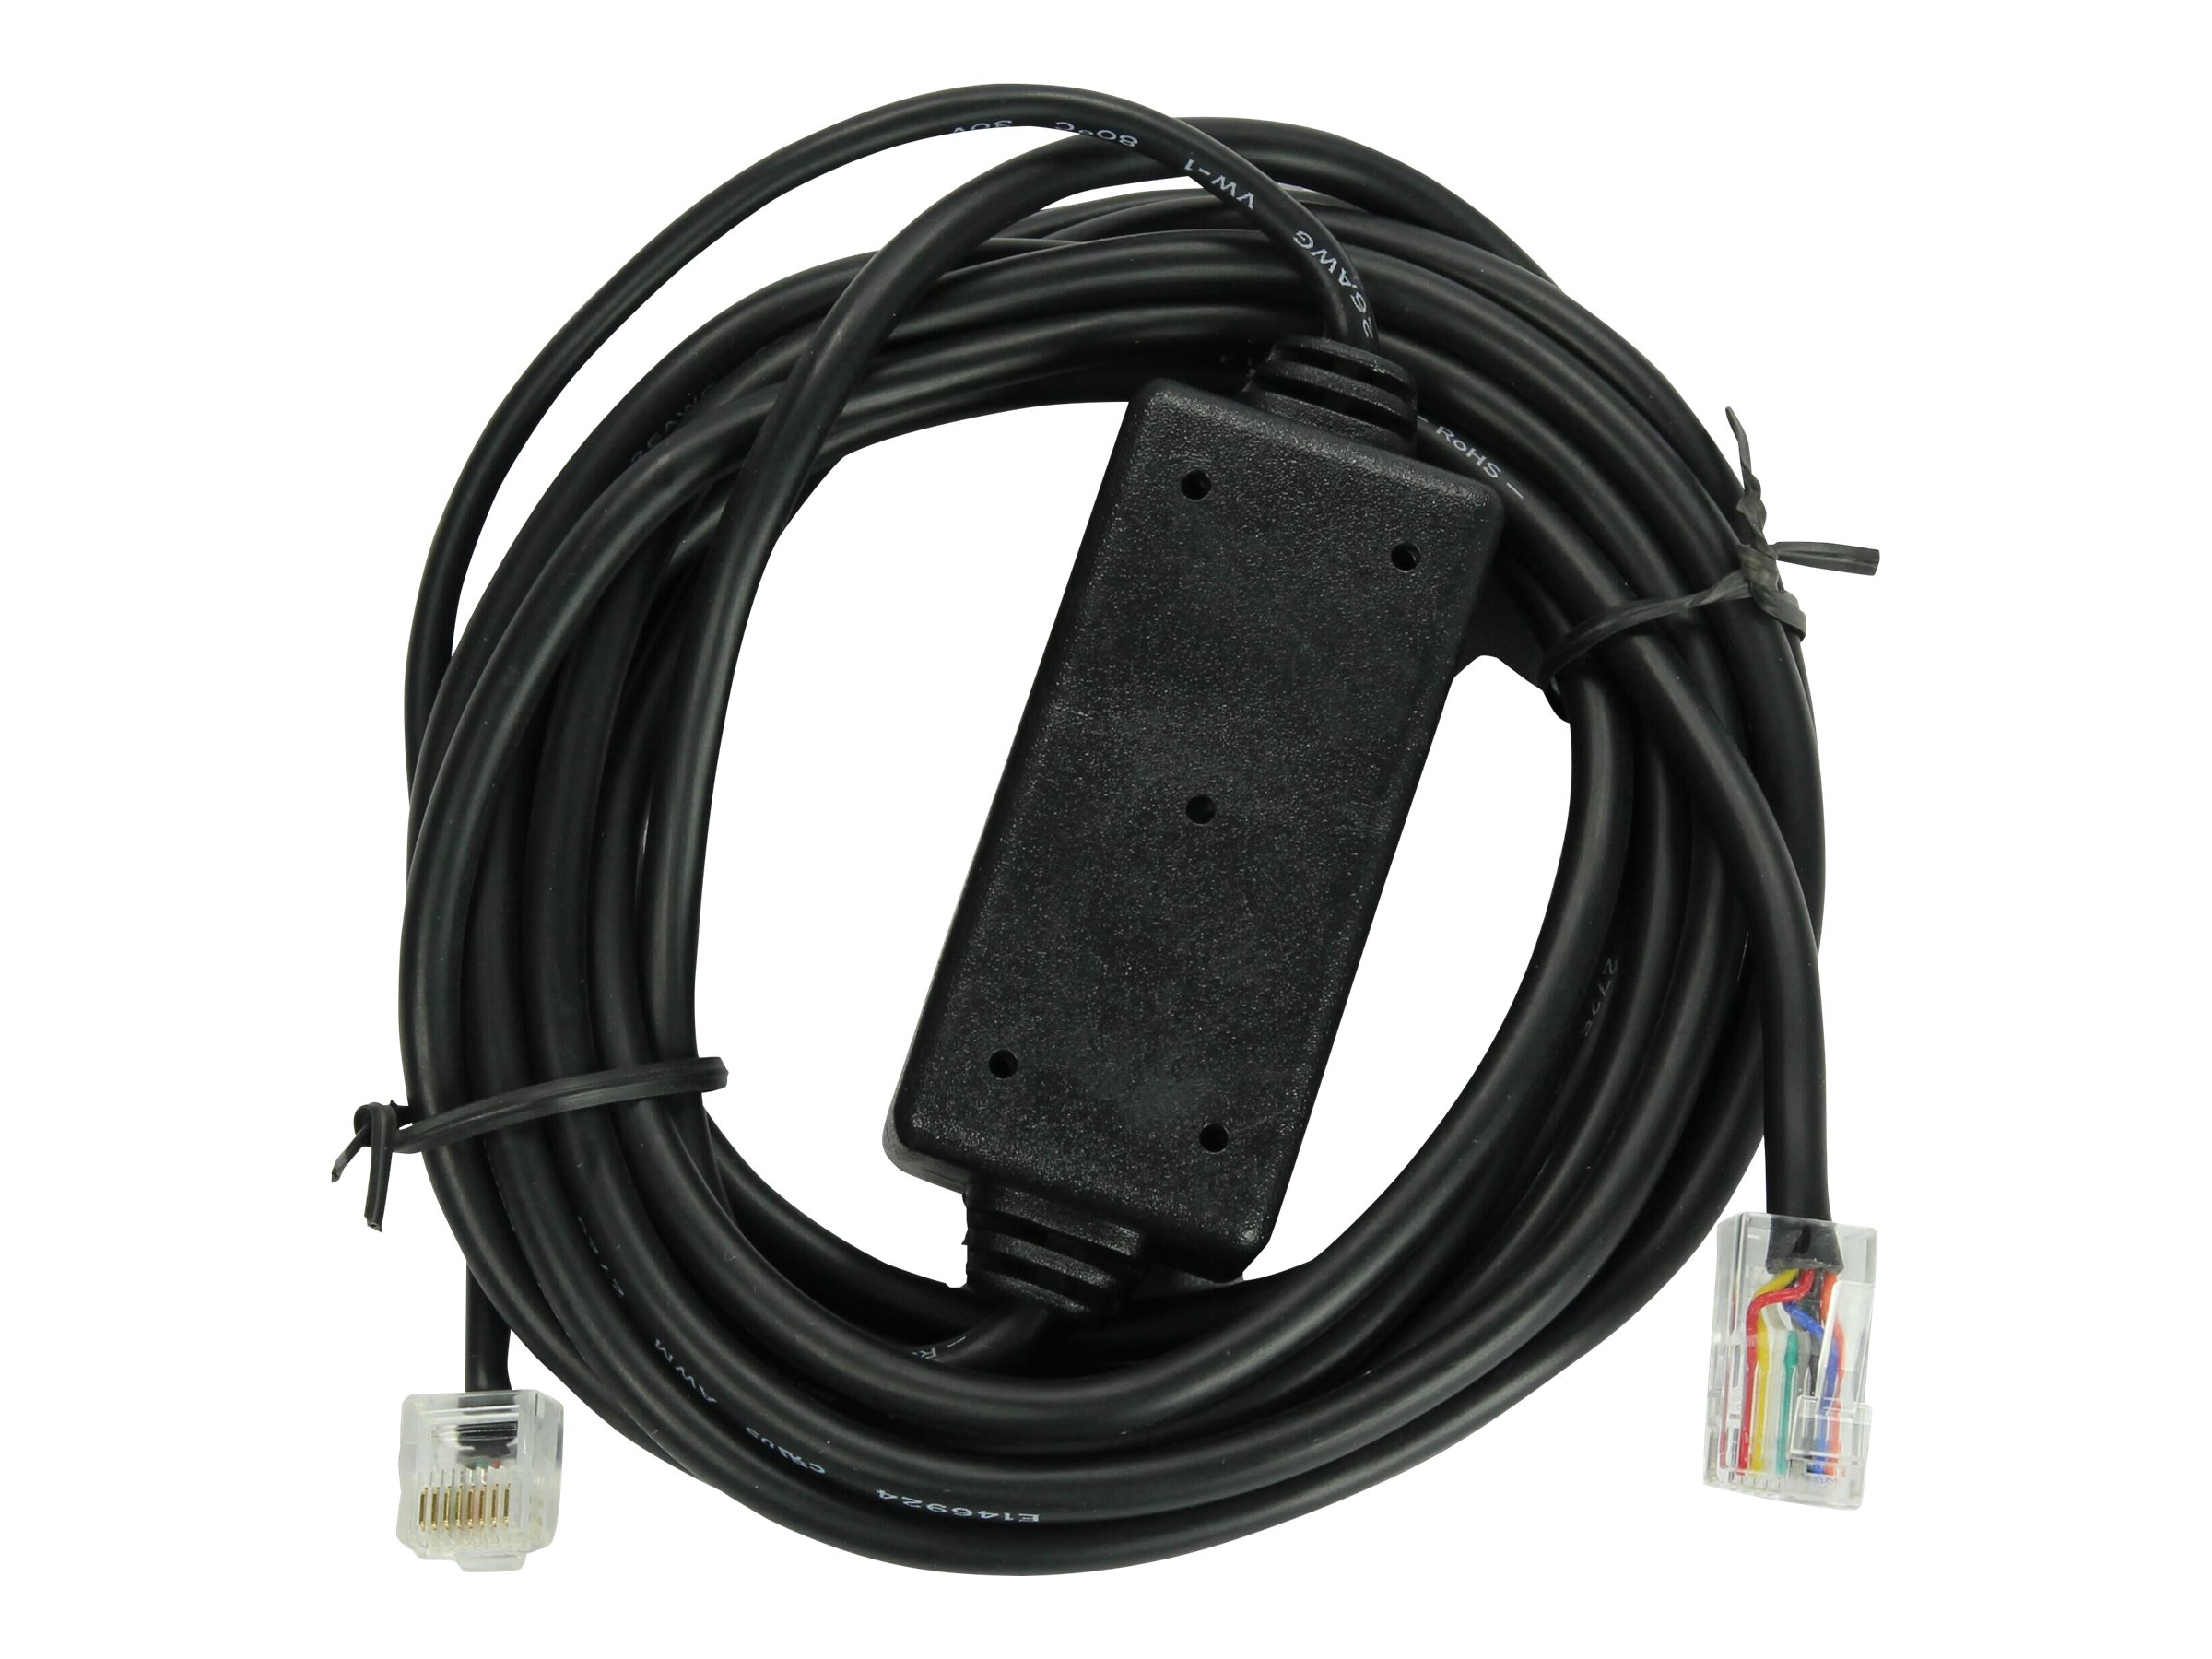 Konftel Unify connection cable - Datenkabel - 3 m - für Konftel 55Wx